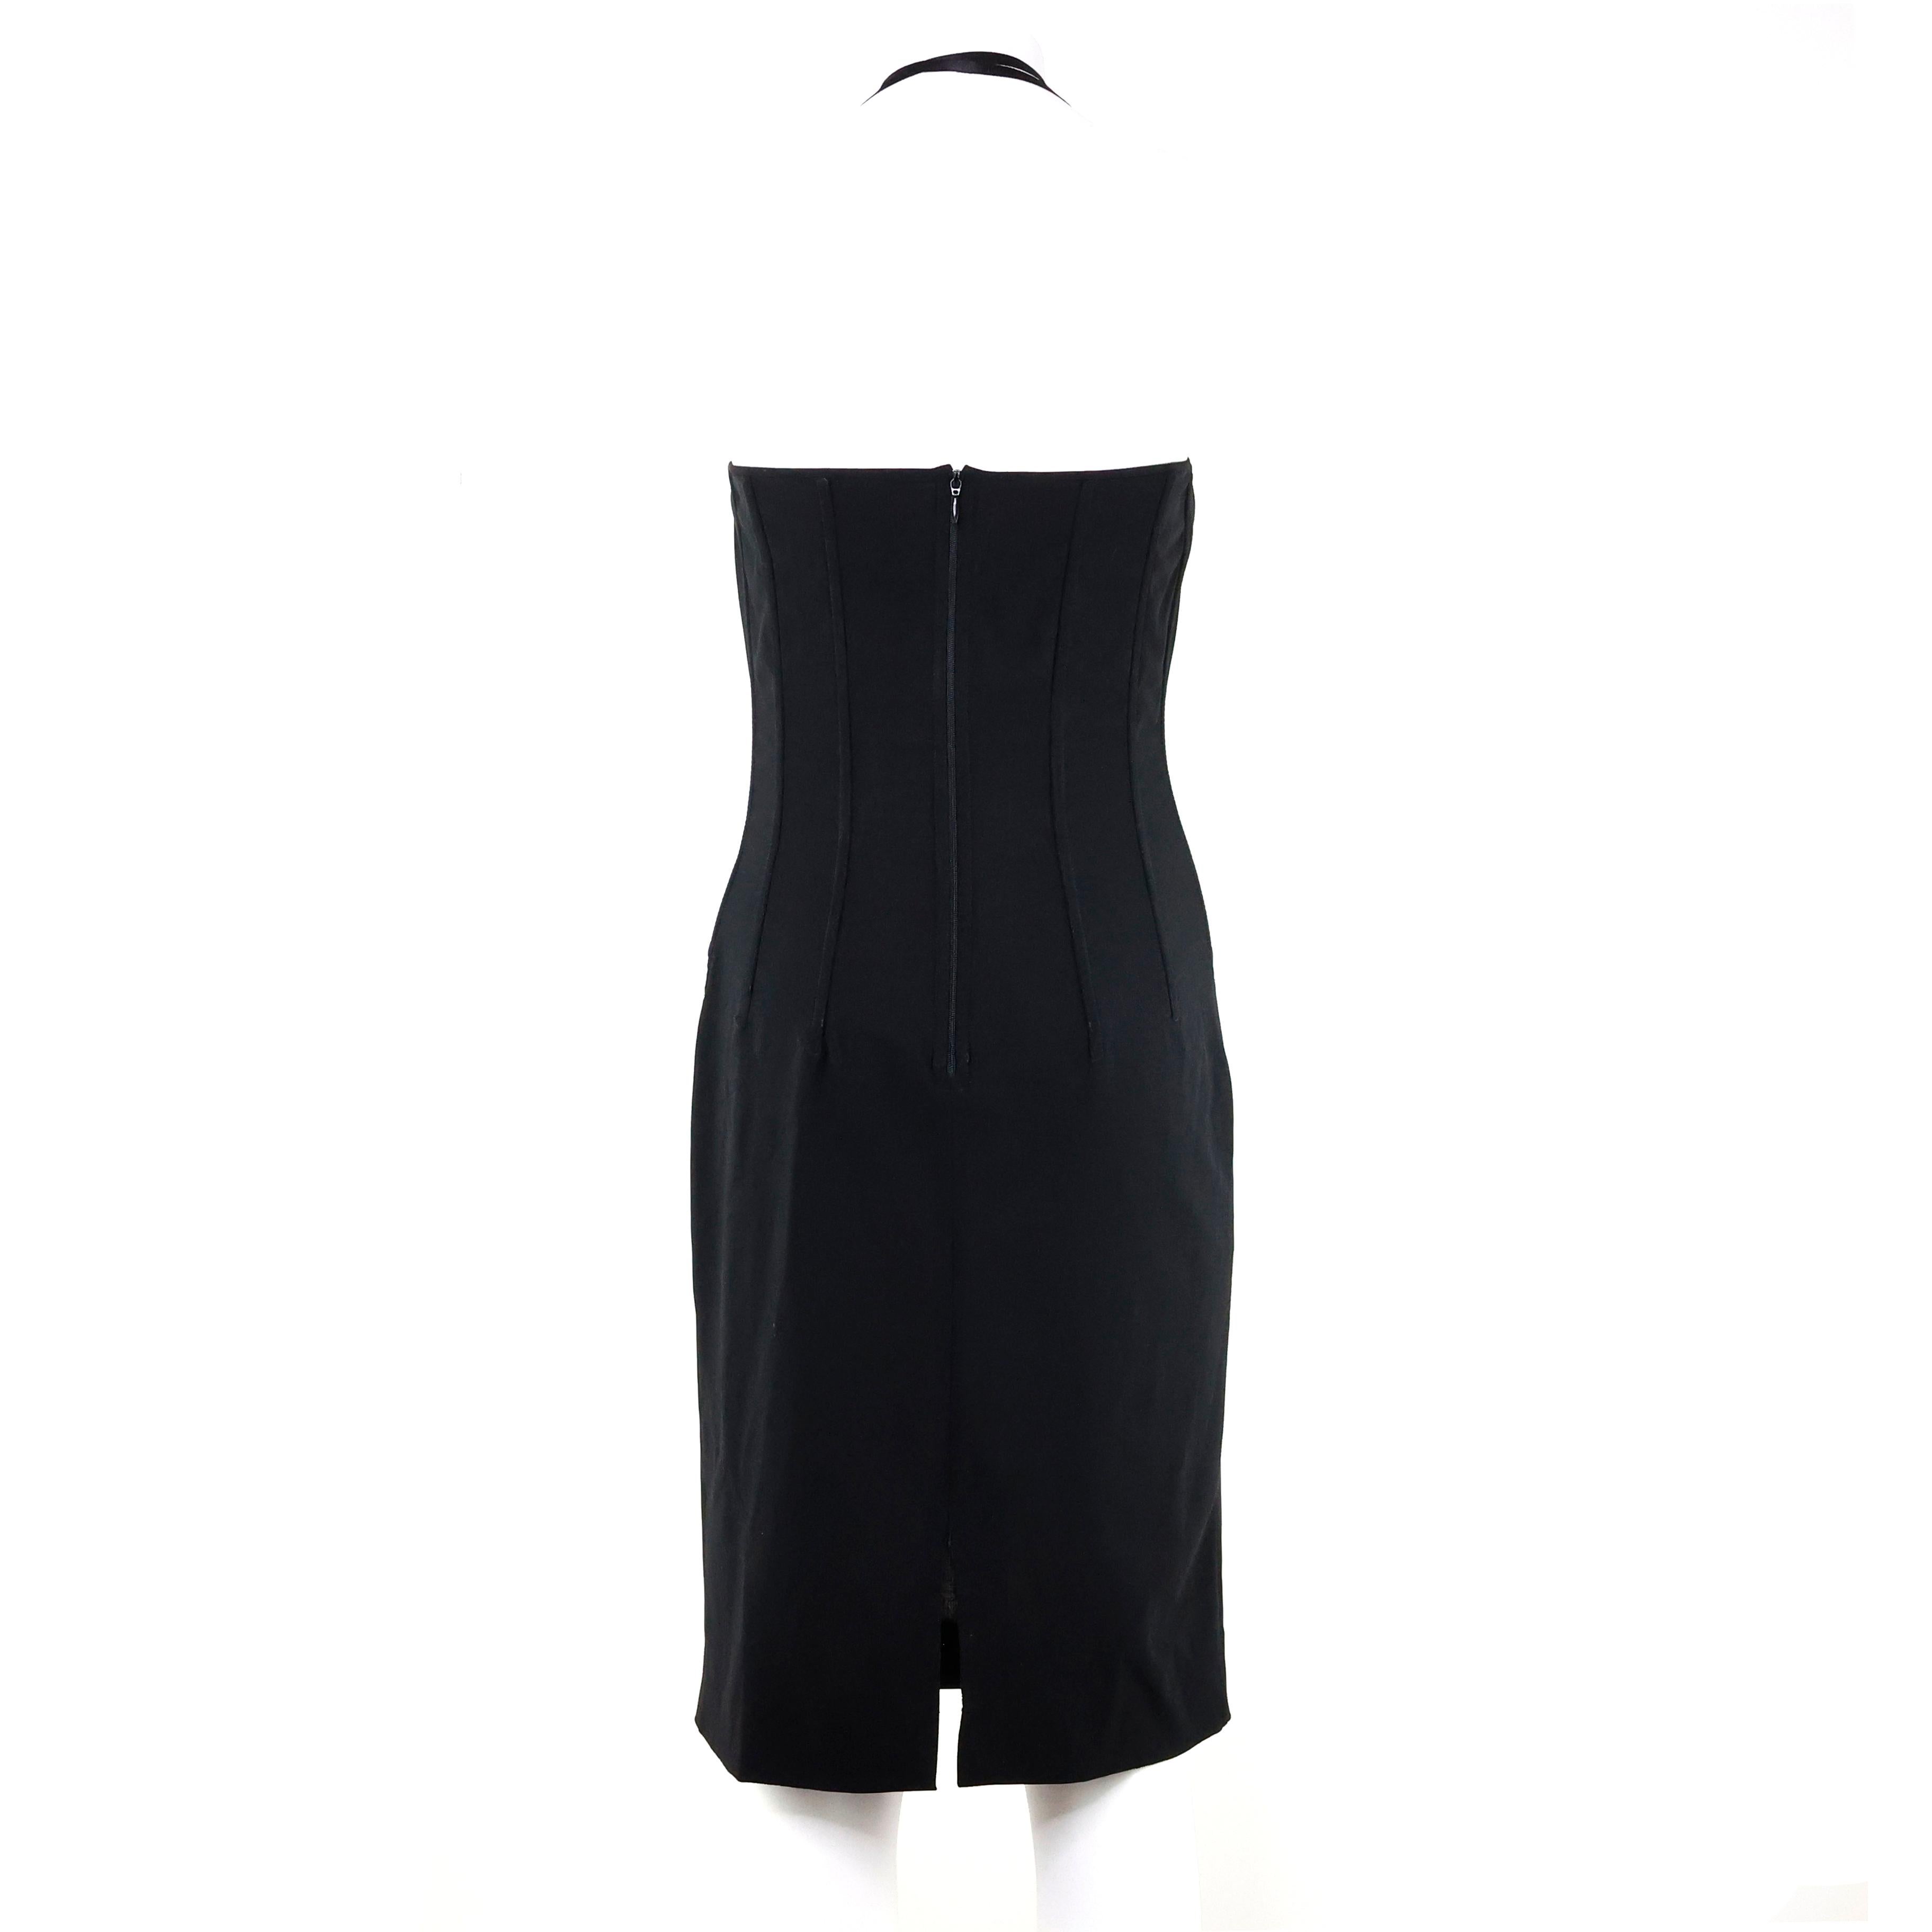 Dolce e Gabbana - Robe corset noire en laine. Taille 40 IT.

Condit :
Très bon/bien. A noter : petites taches, veuillez vérifier les photos.